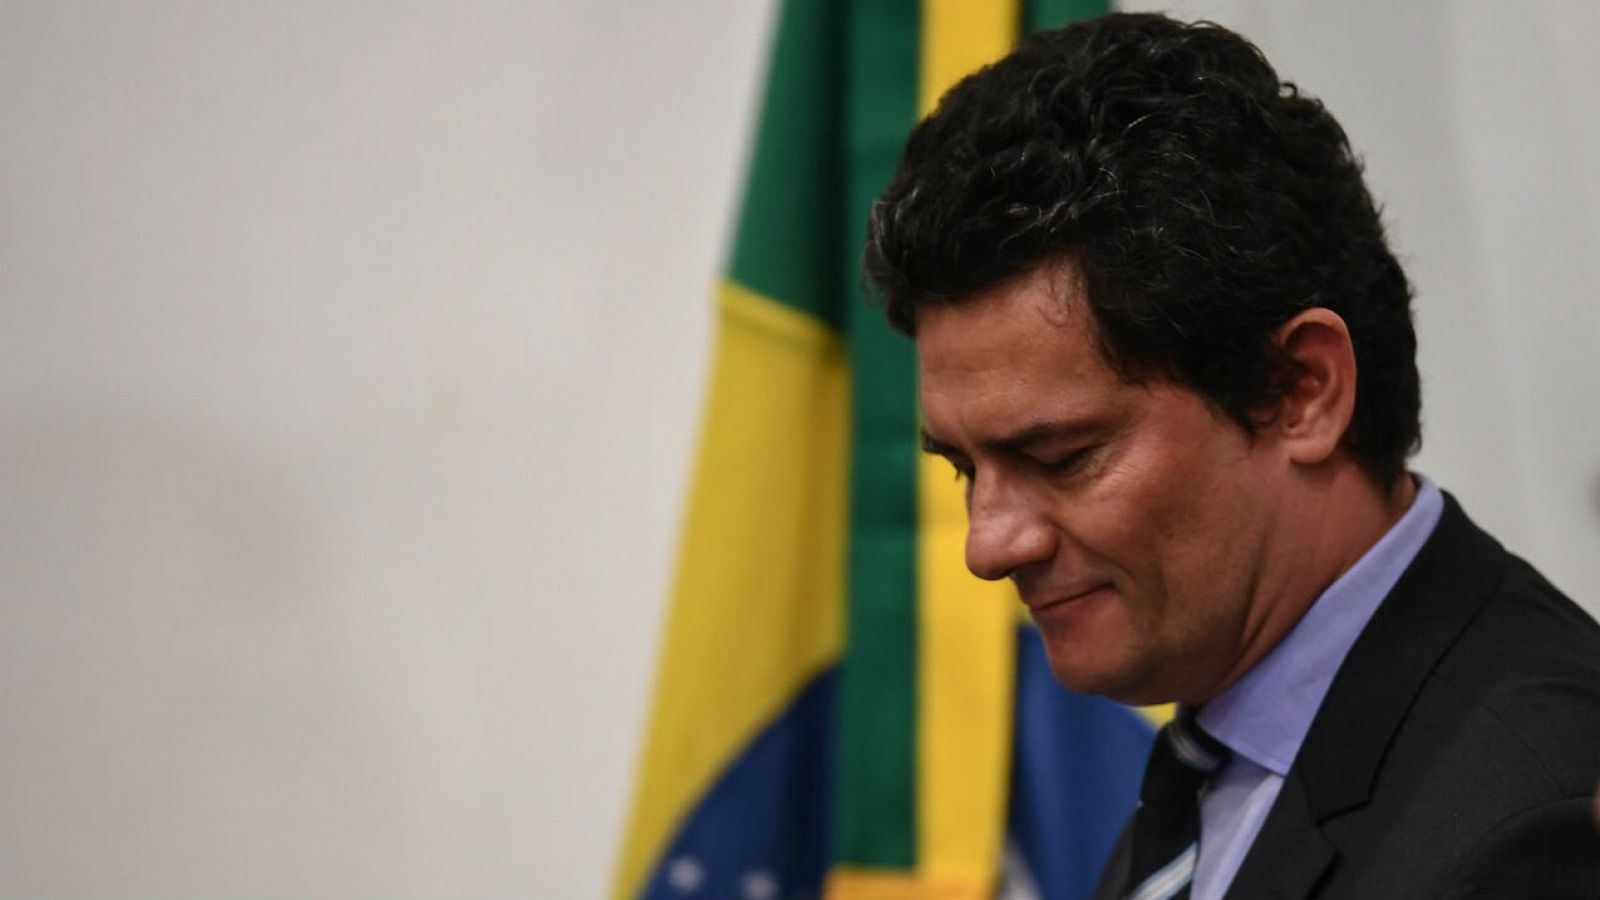 Dimite el ministro de Justicia brasileño tras acusar a Bolsonaro de "interferencias políticas"